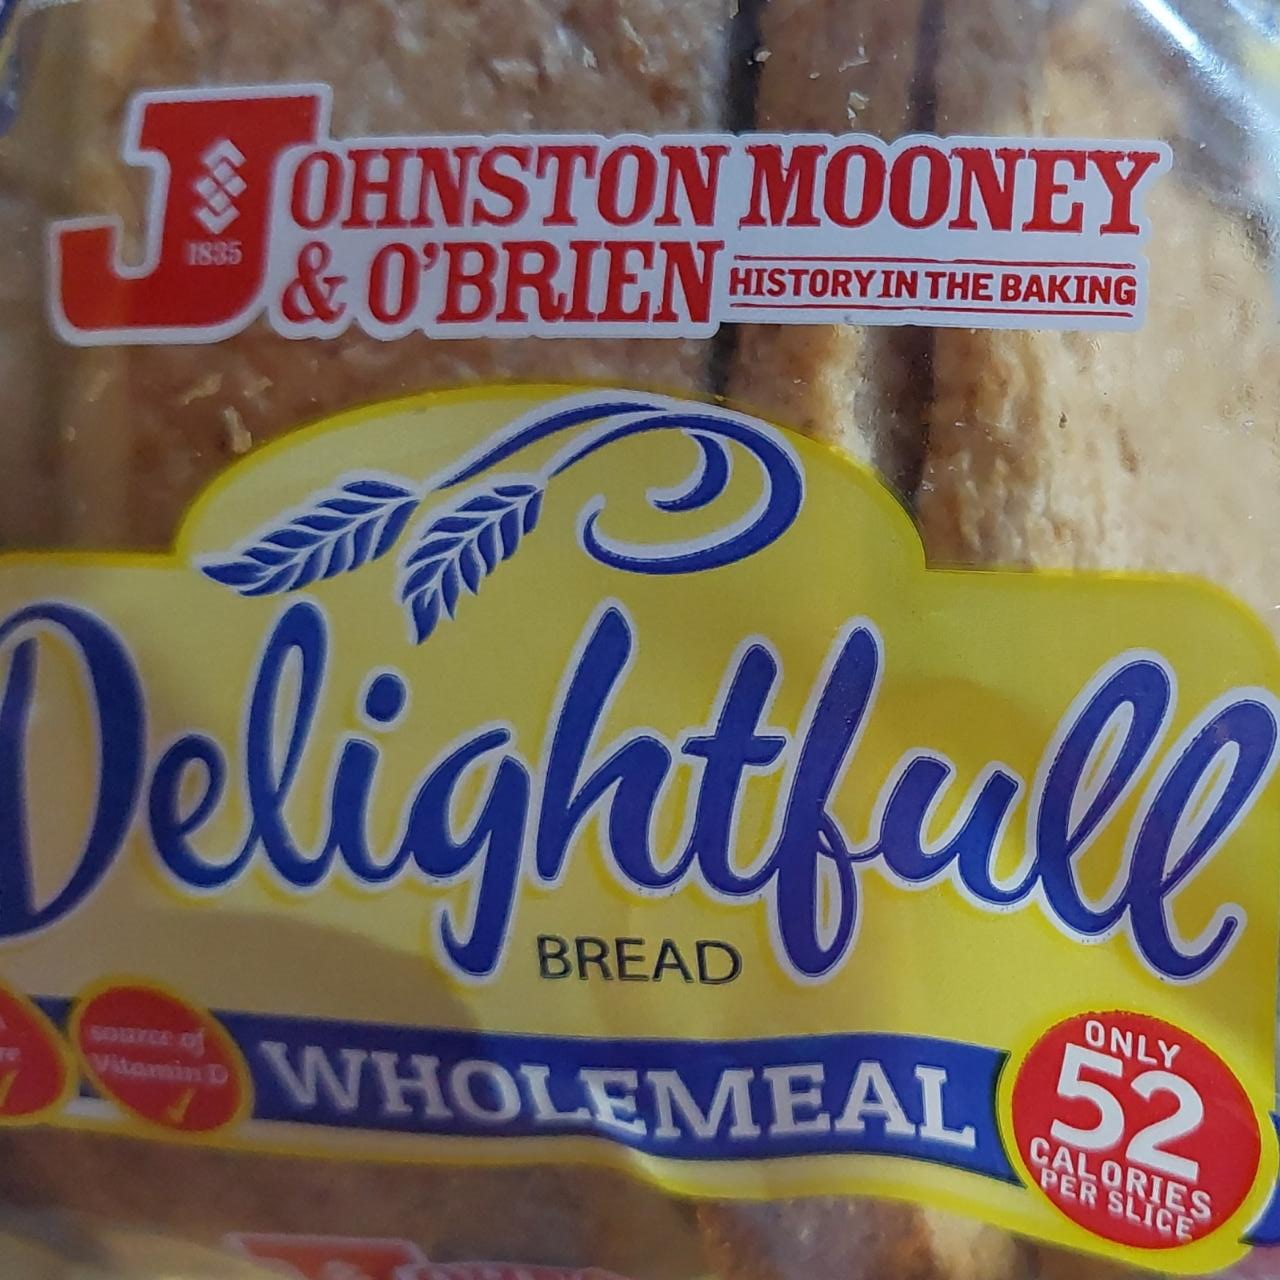 Fotografie - Delightfull bread Wholemeal Johnston Mooney & O'brien